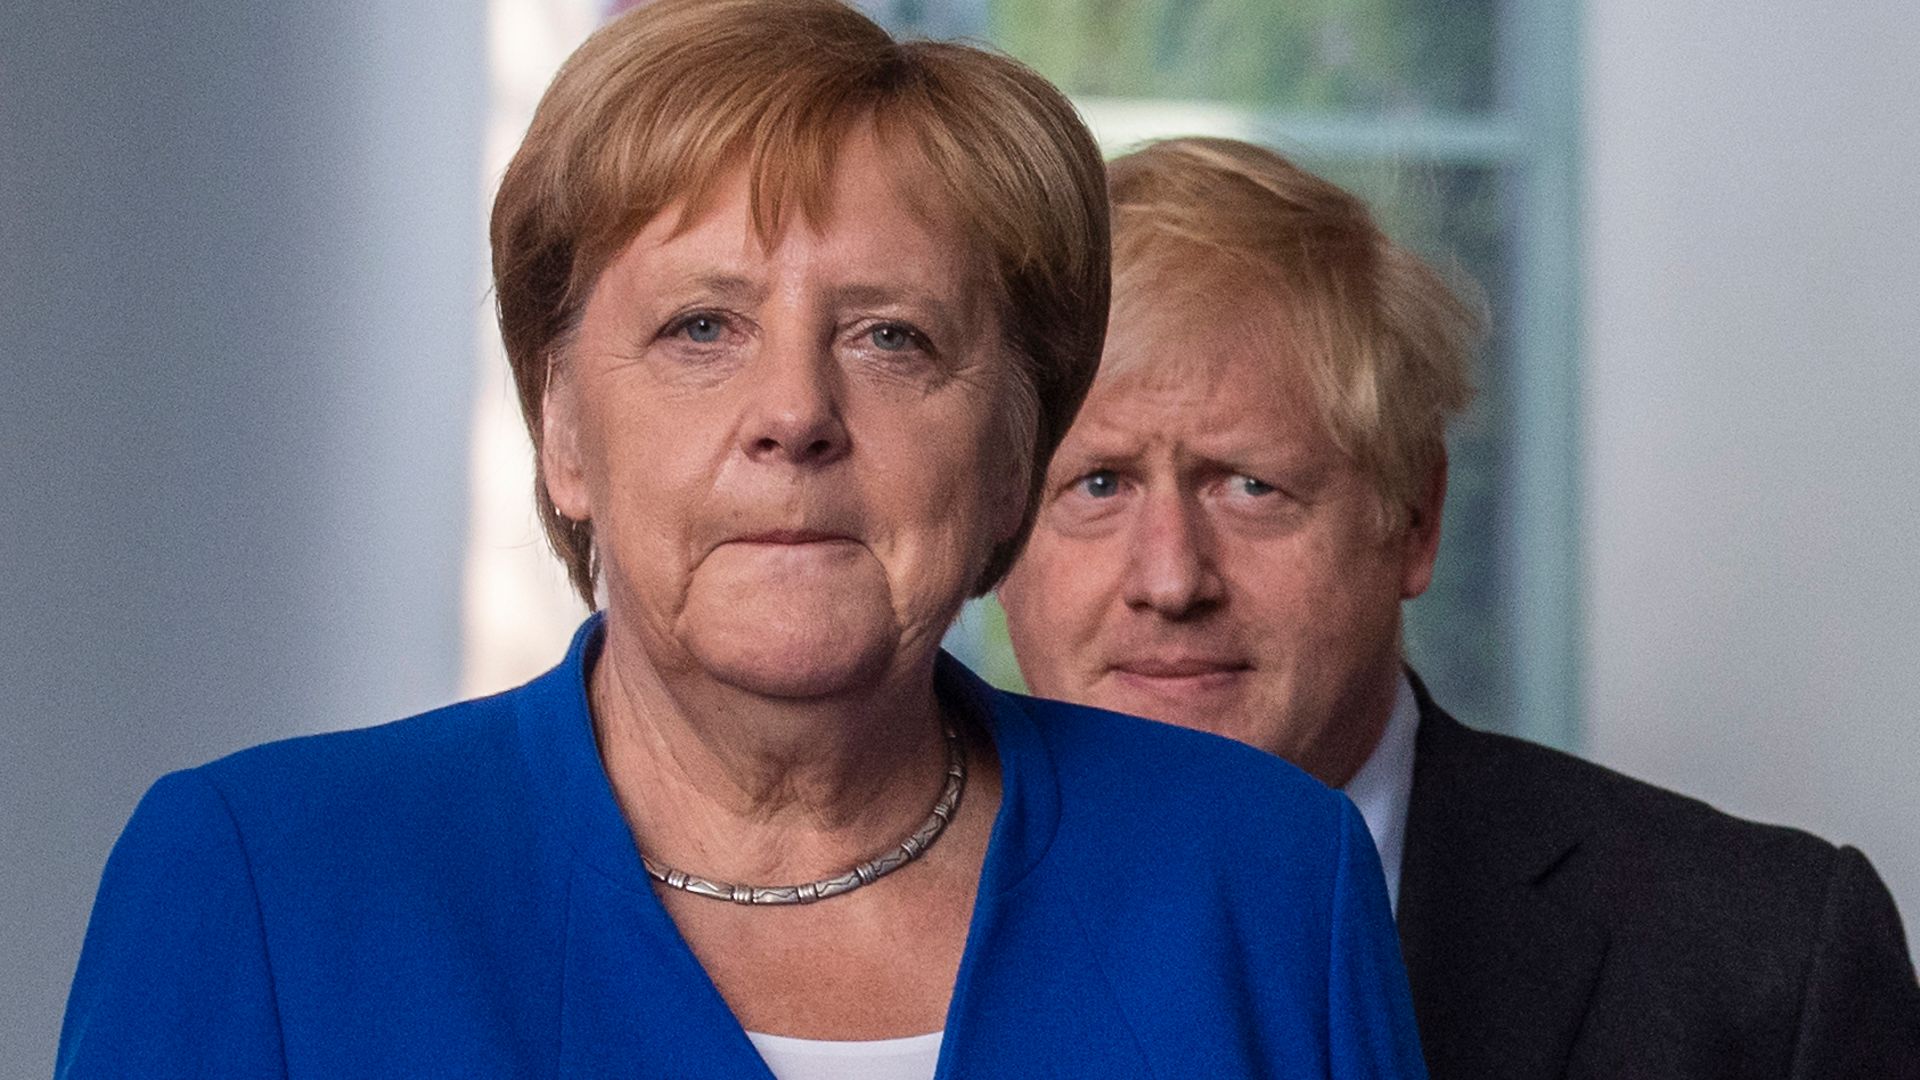 Angela Merkel and Boris Johnson in 2019 in Berlin - Credit: AFP via Getty Images